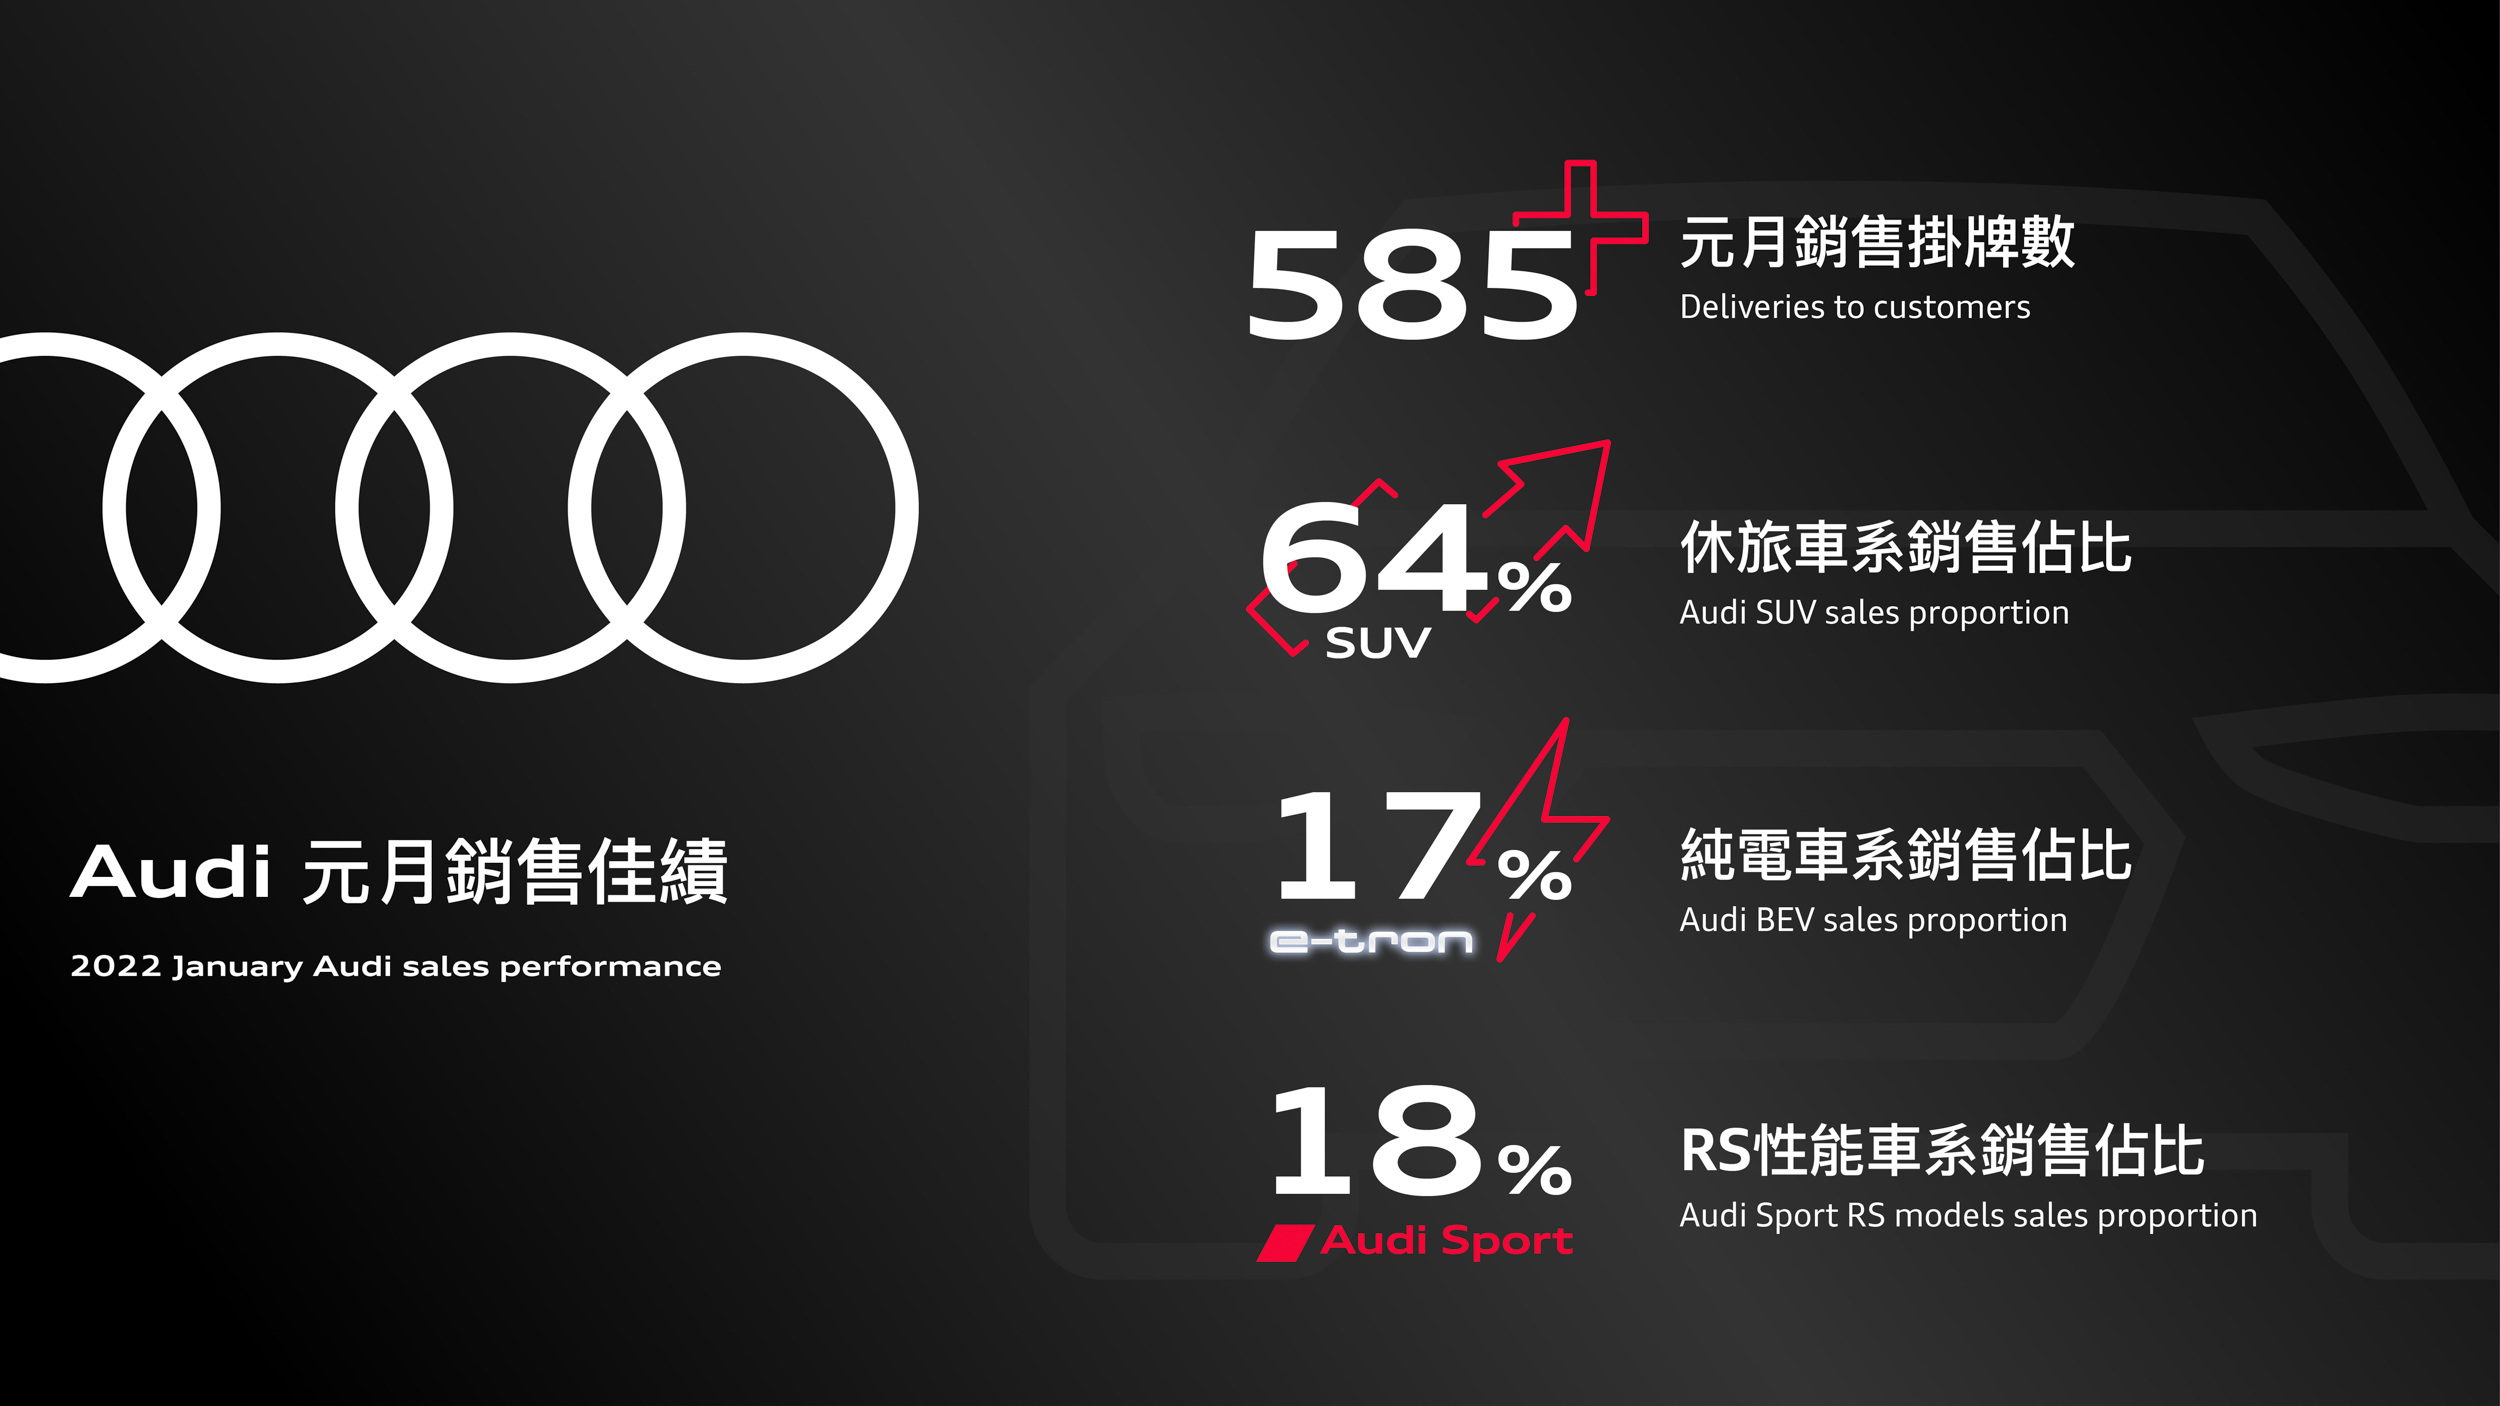 新春開創佳績 台灣奧迪寫下 Audi 元月在台銷售新紀錄